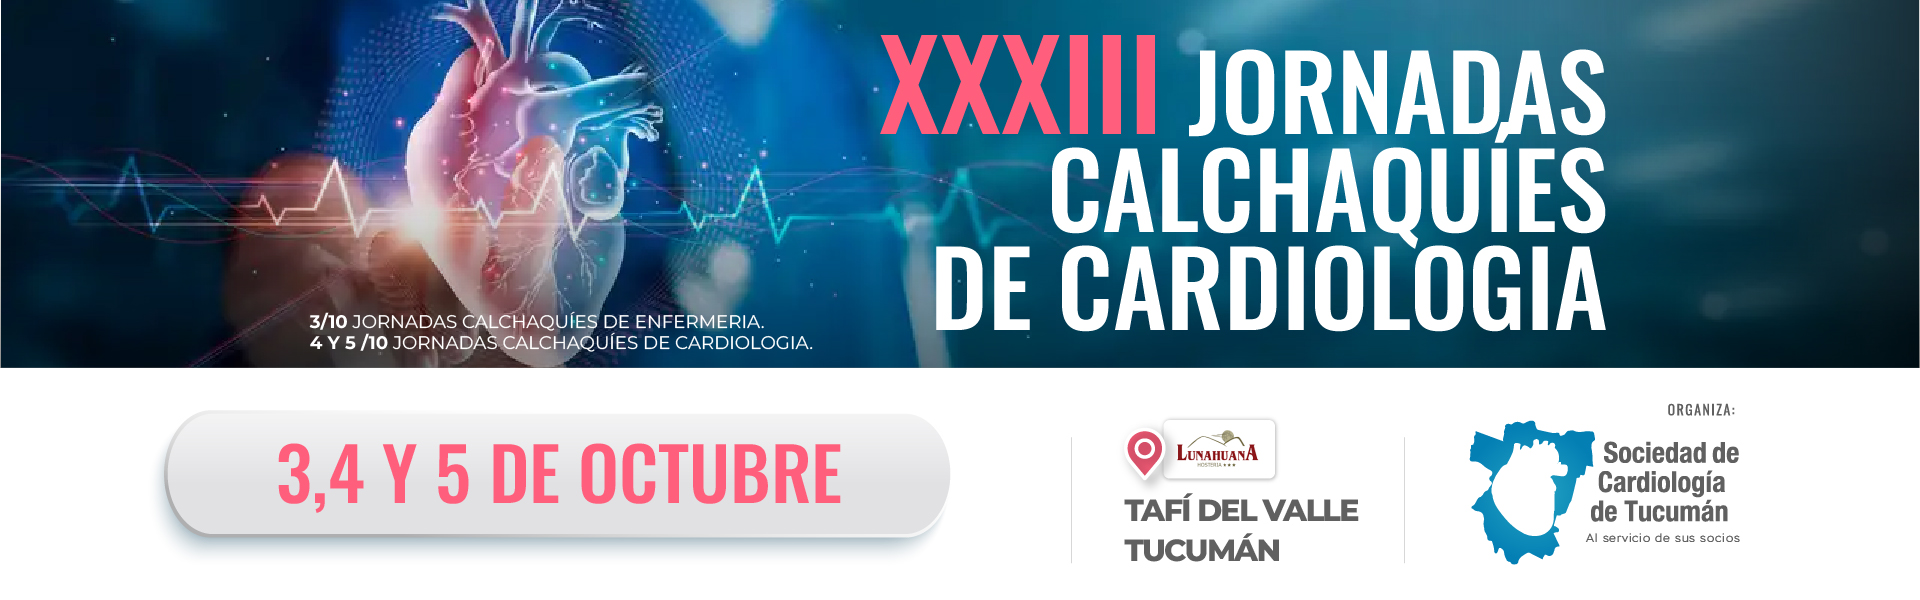 Banner principal del evento XXXIII Jornadas Calchaquies de Cardiología